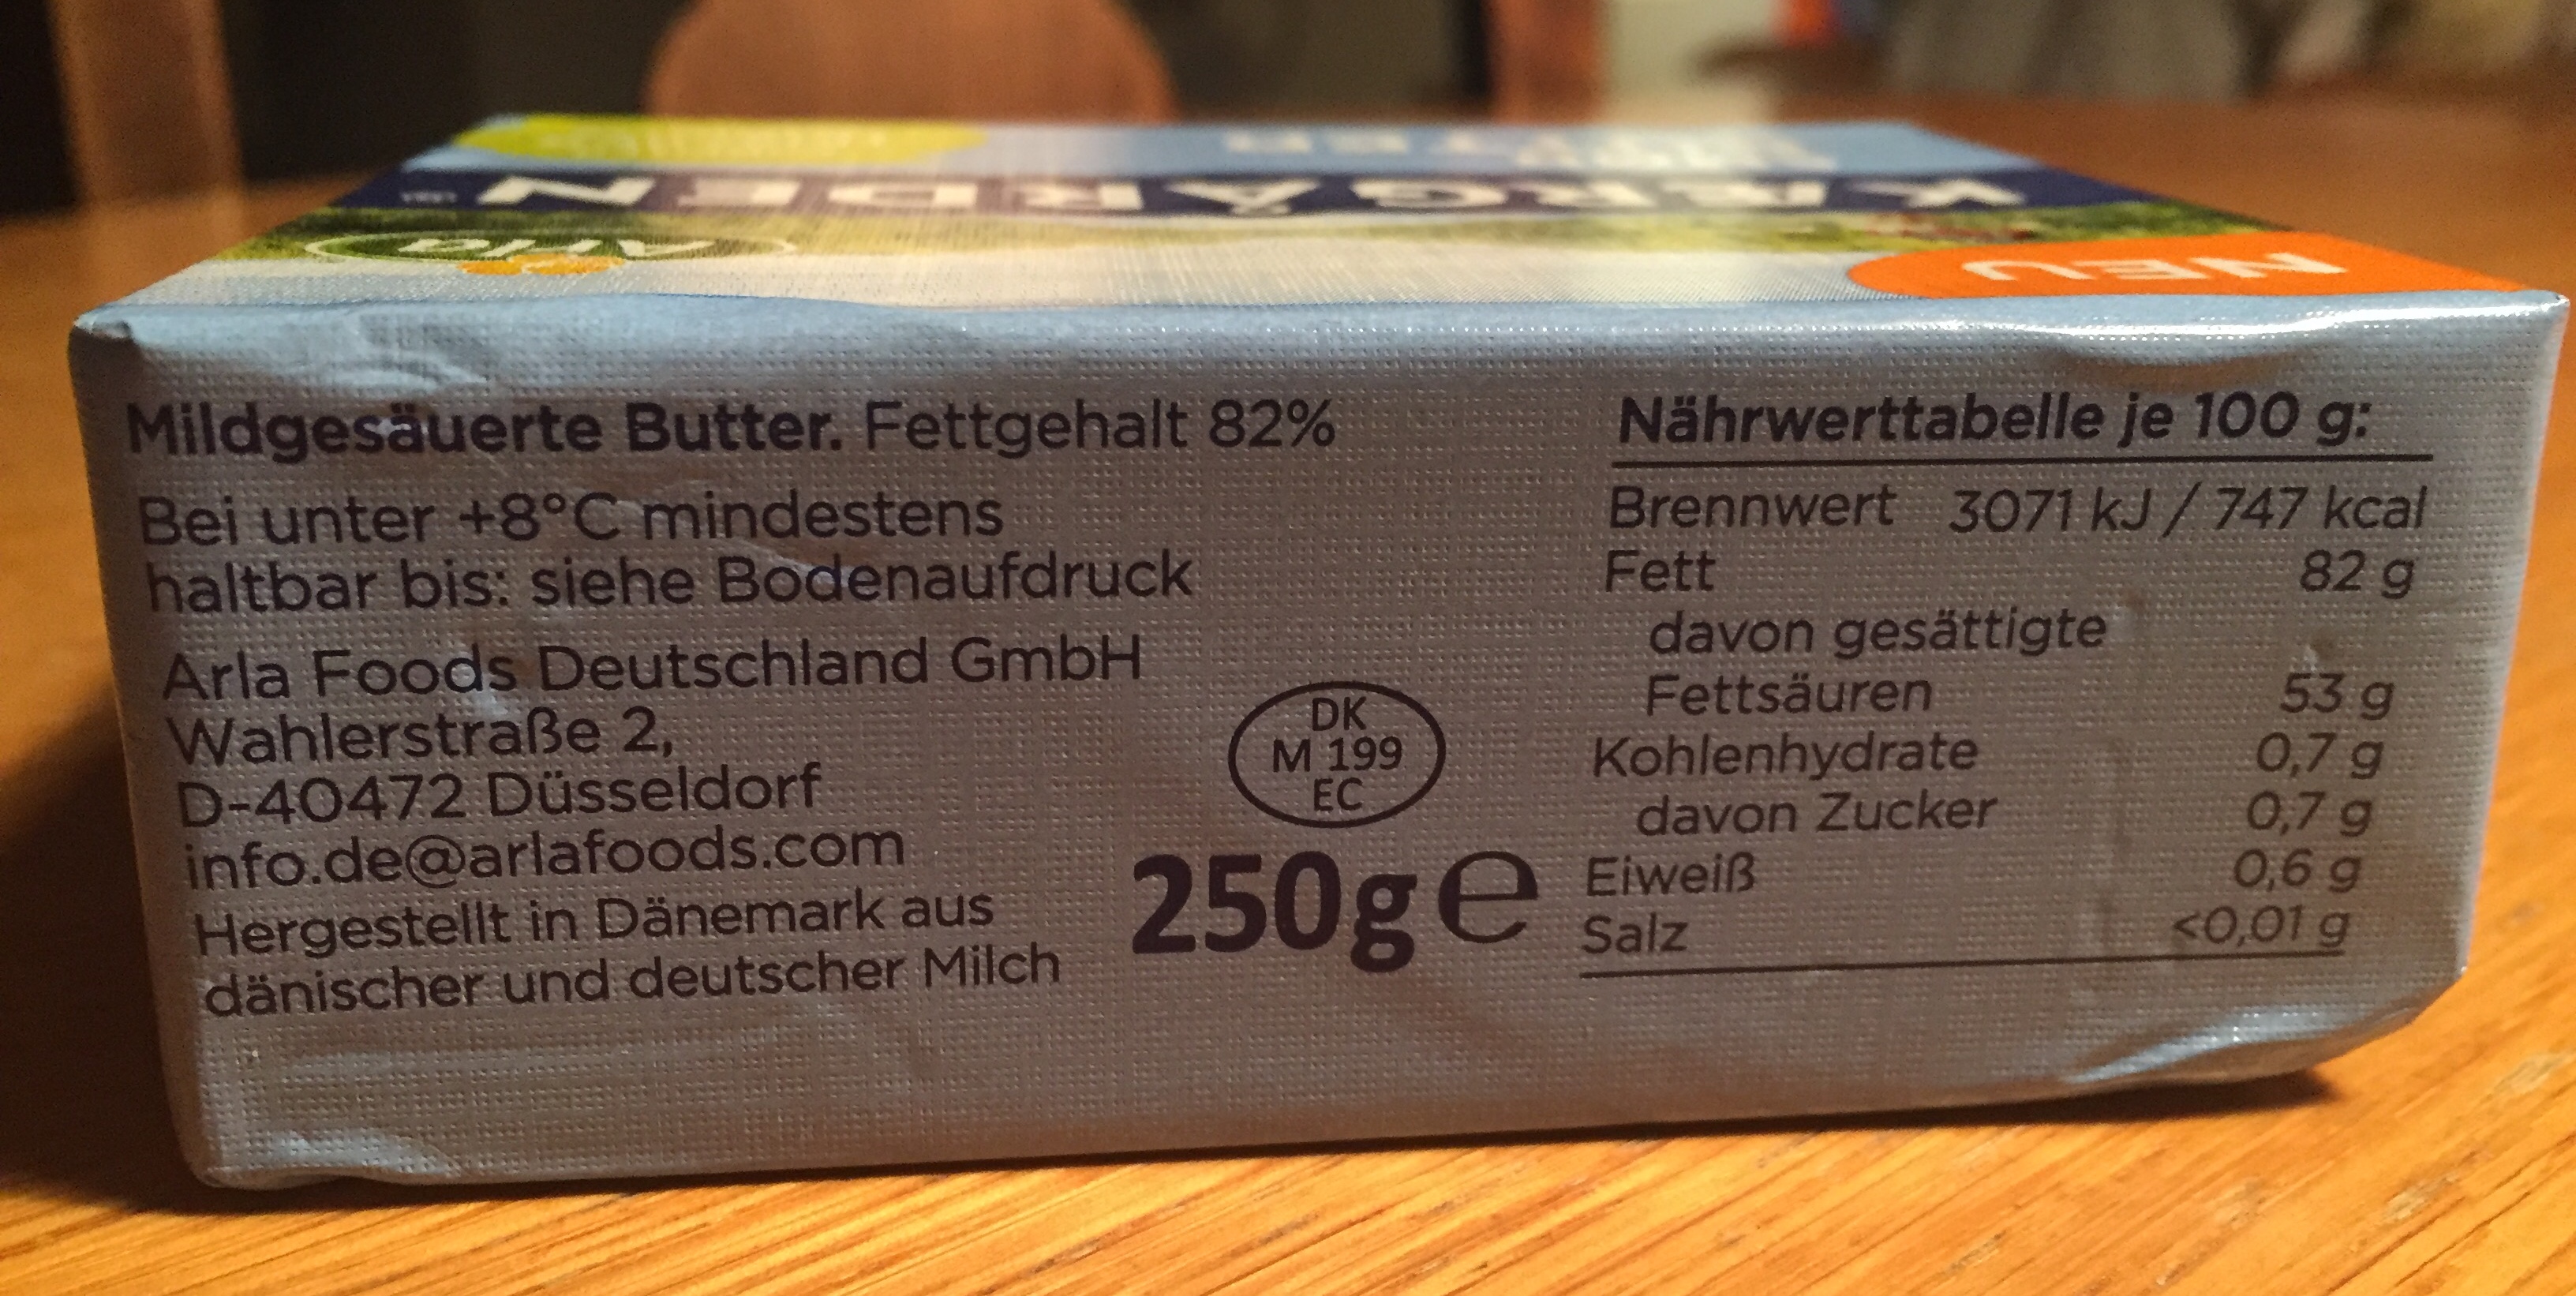 Butter aus dänischer und deutscher Milch